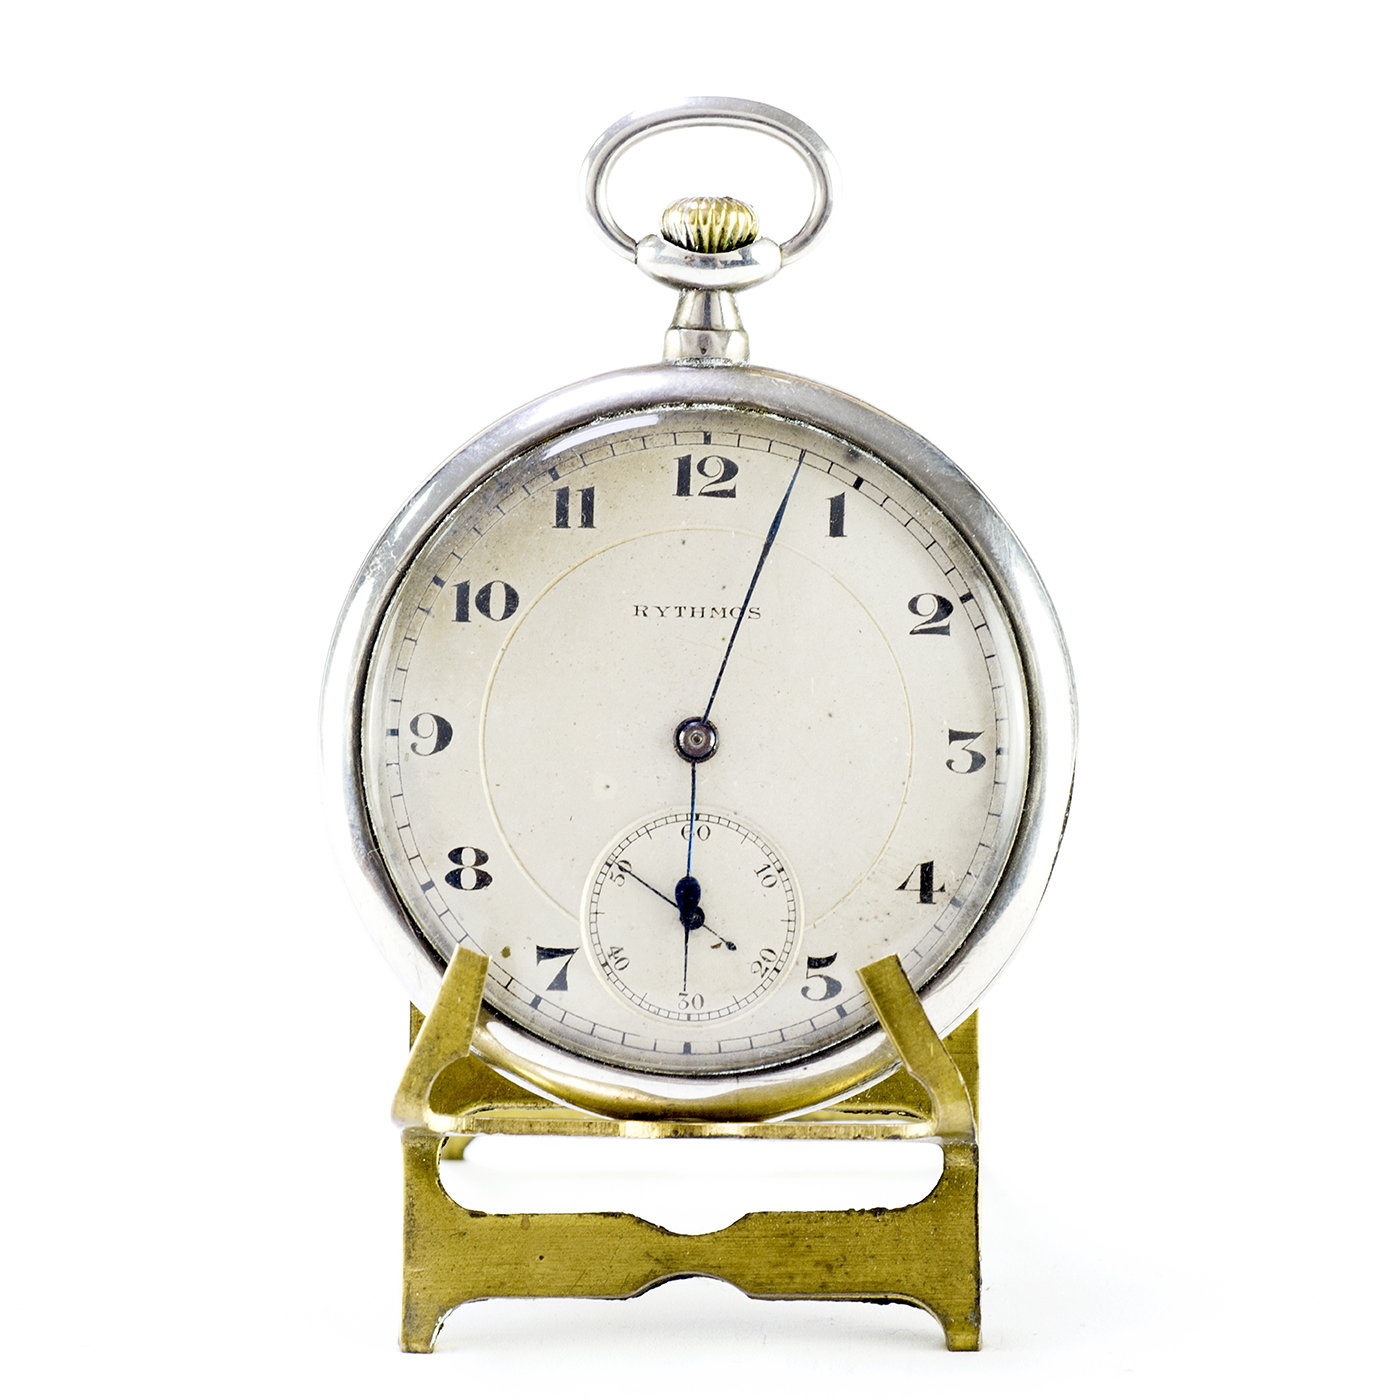 RYTHMOS . Reloj de bolsillo, lepine y remontoir. Suiza, ca. 1910.